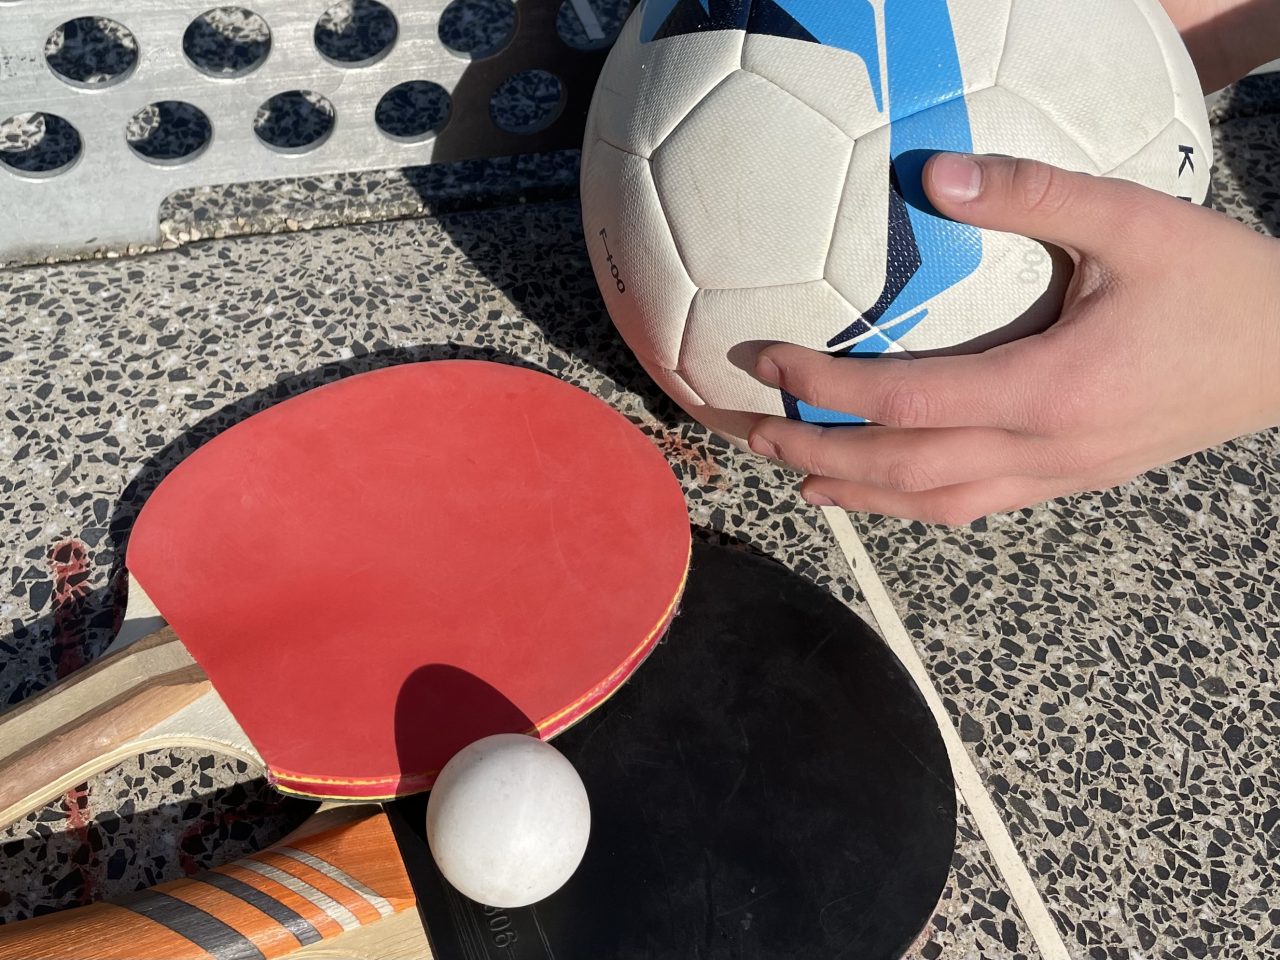 zwei Tischtenniskellen mit einem weißen tischtennisball auf einer Tischtennisplatte liegend - daneben halten Kinderhände einen Fußball